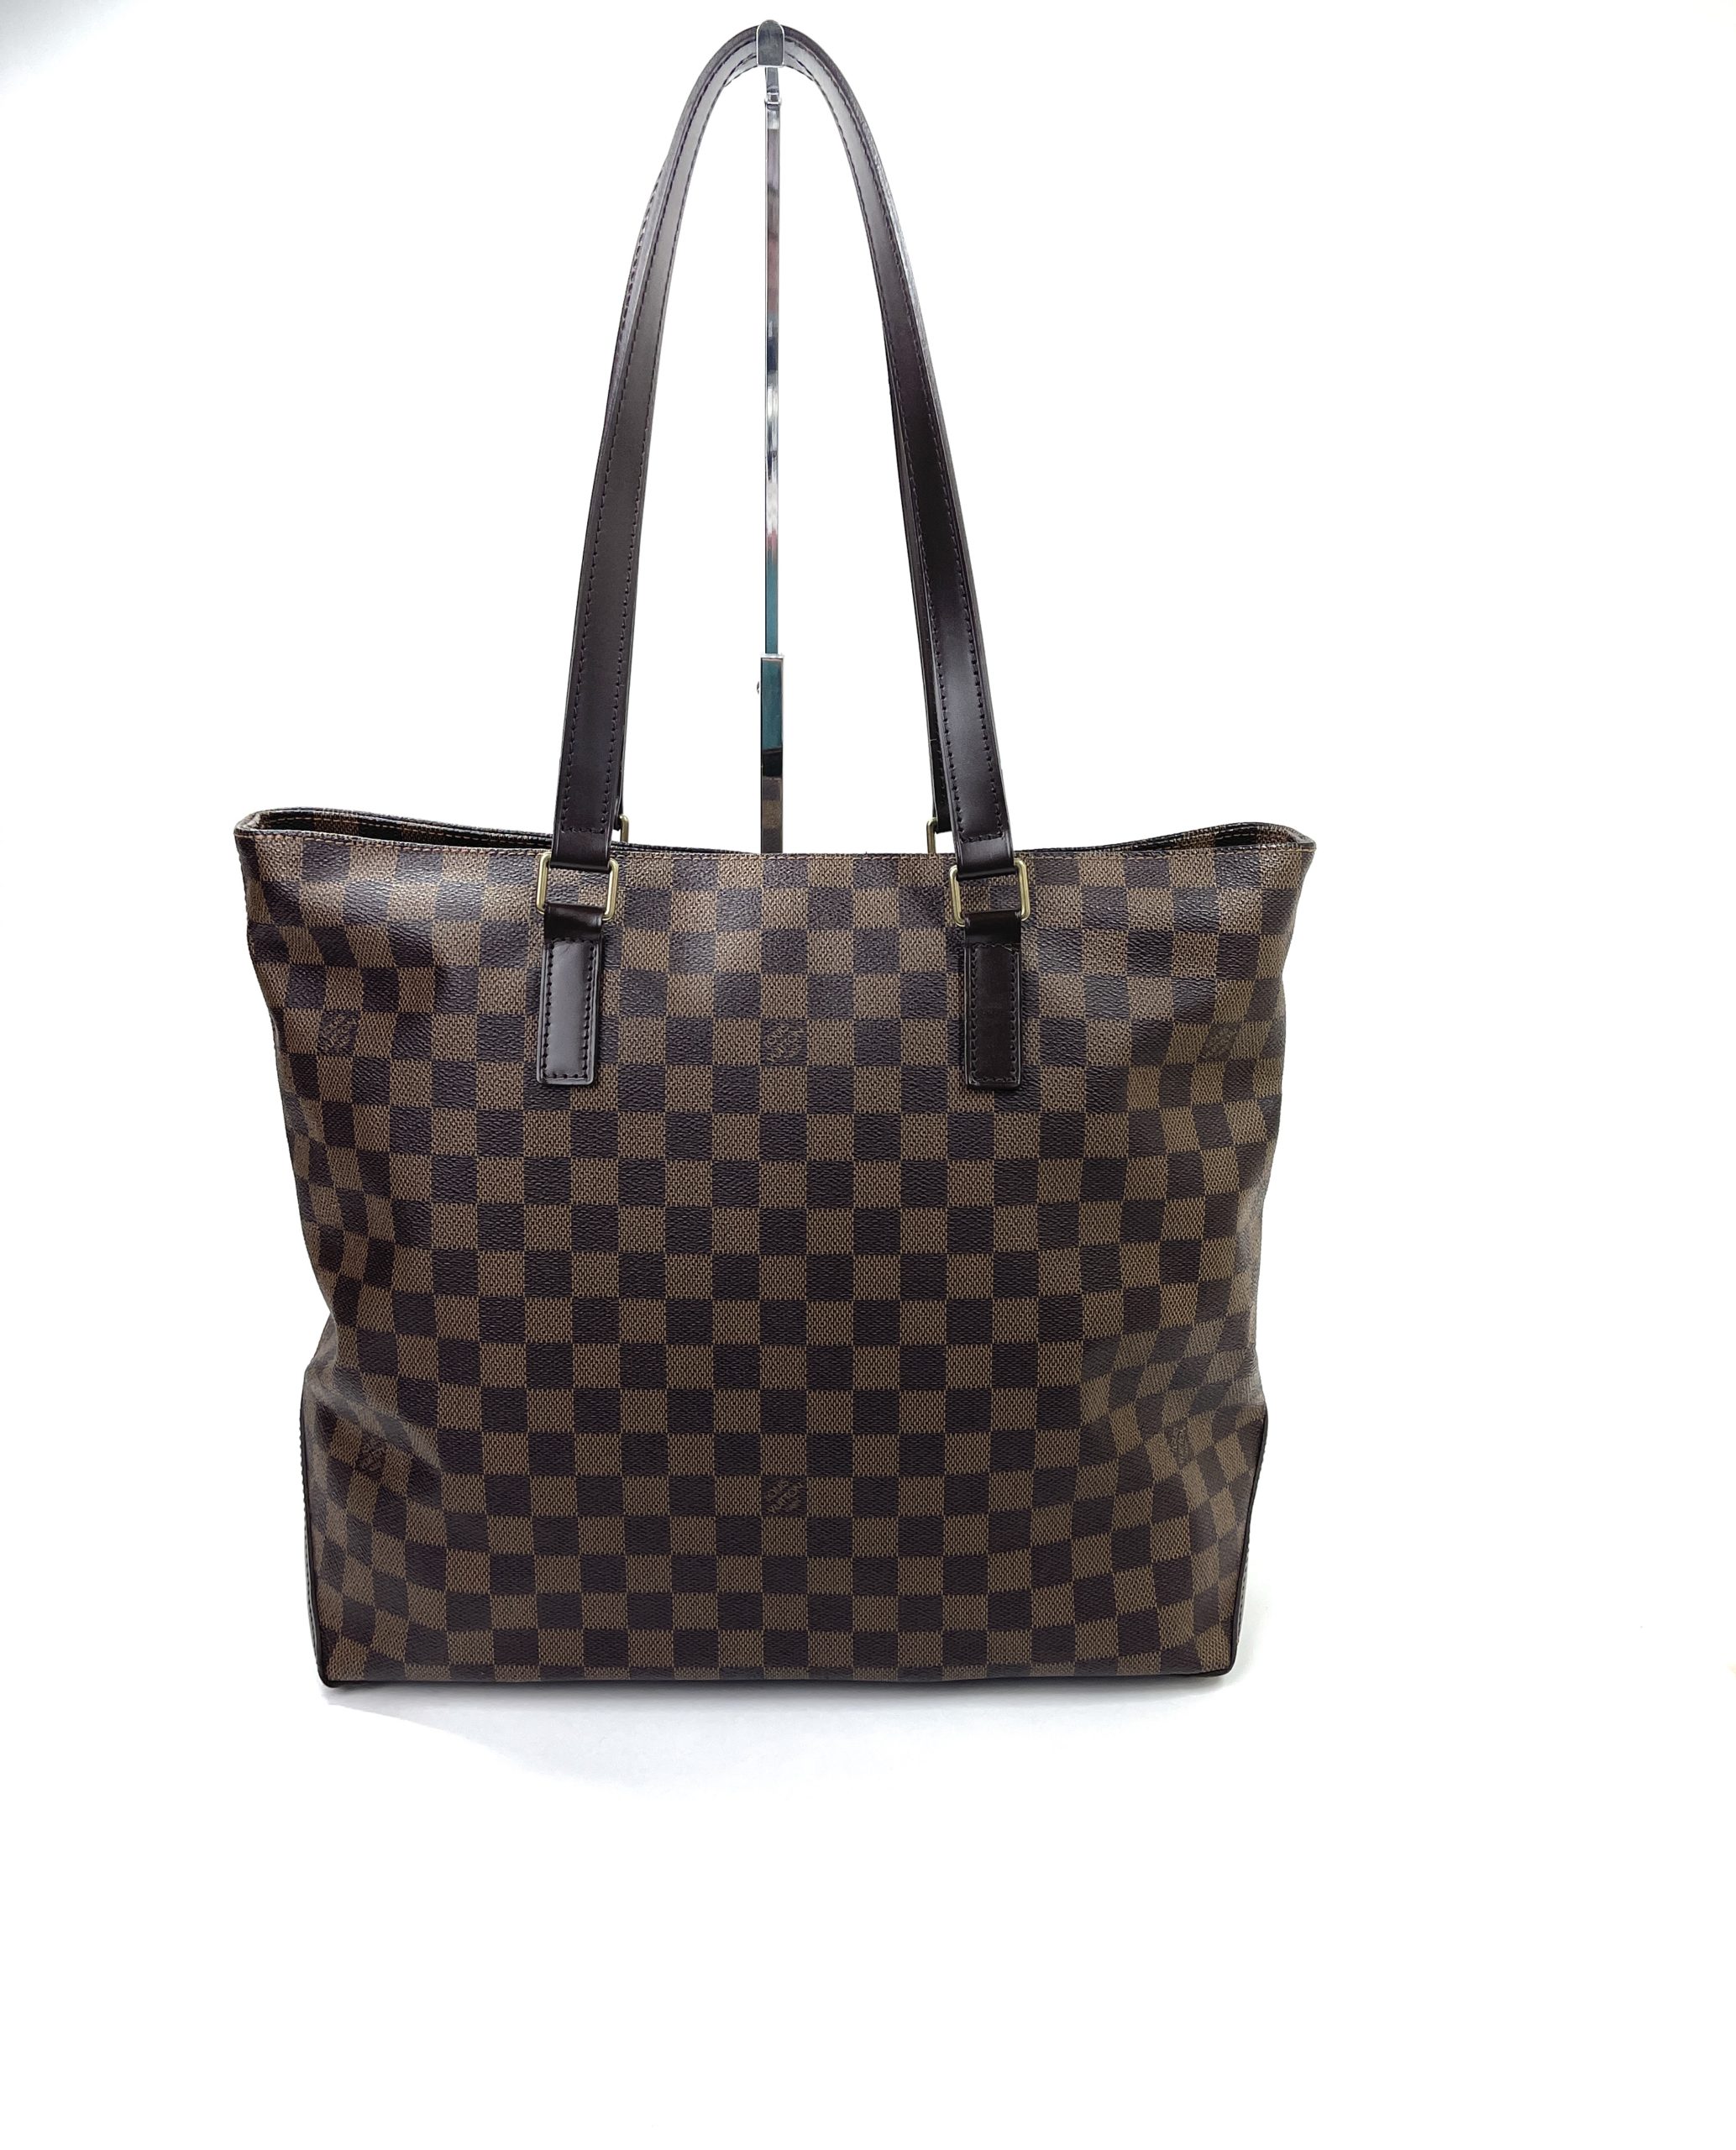 Louis Vuitton White Checkered Tote Bag